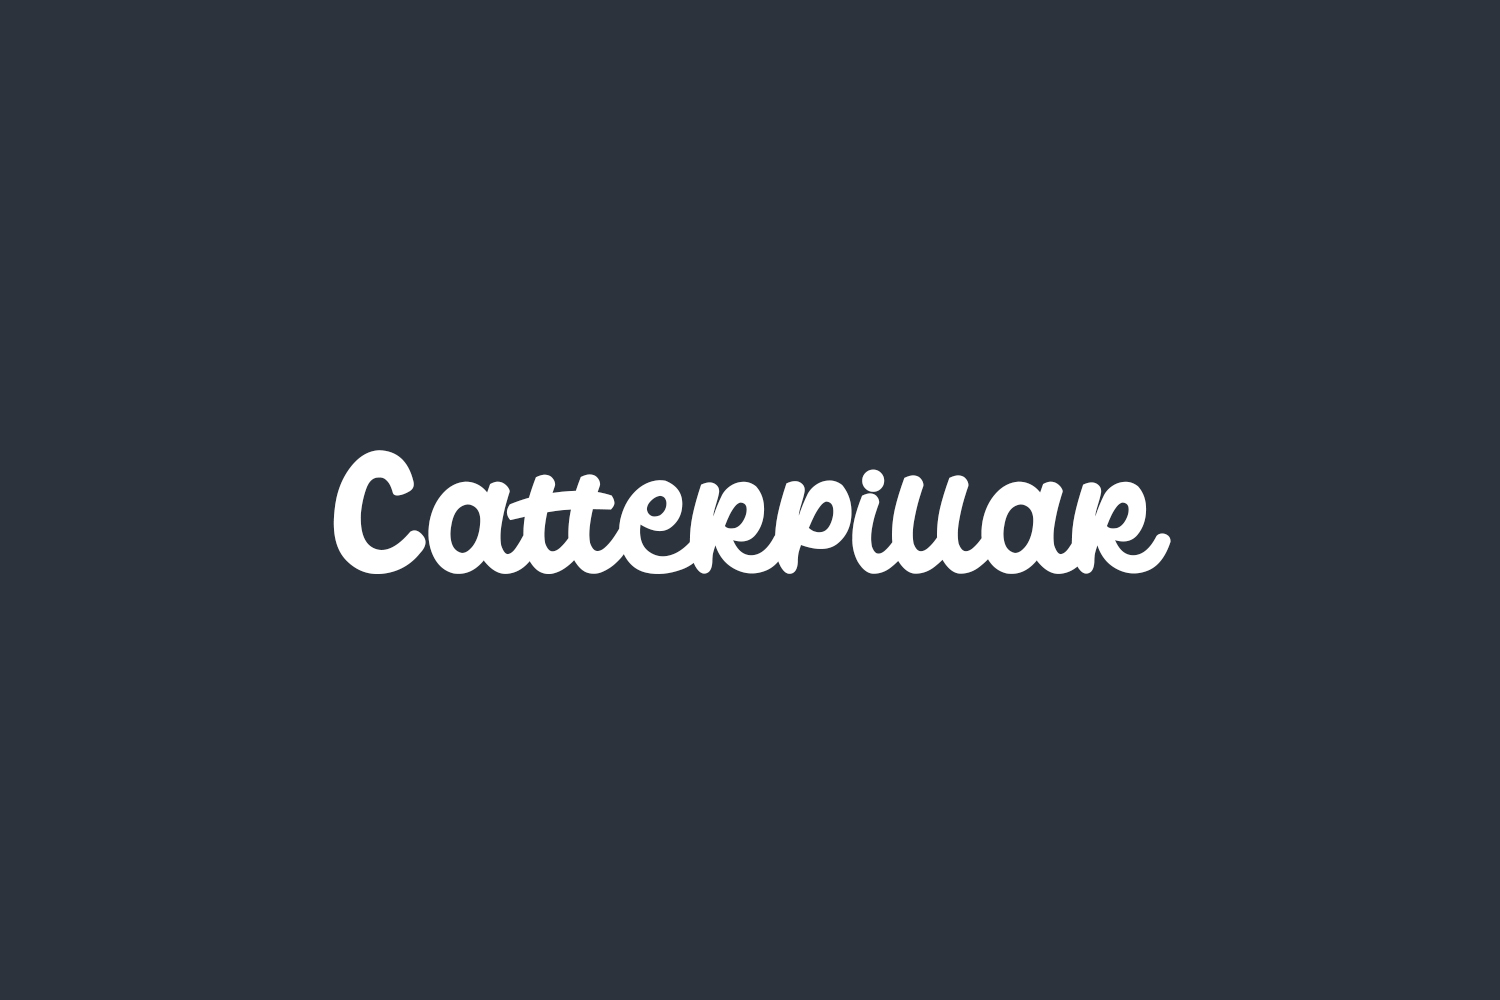 Catterpillar Free Font